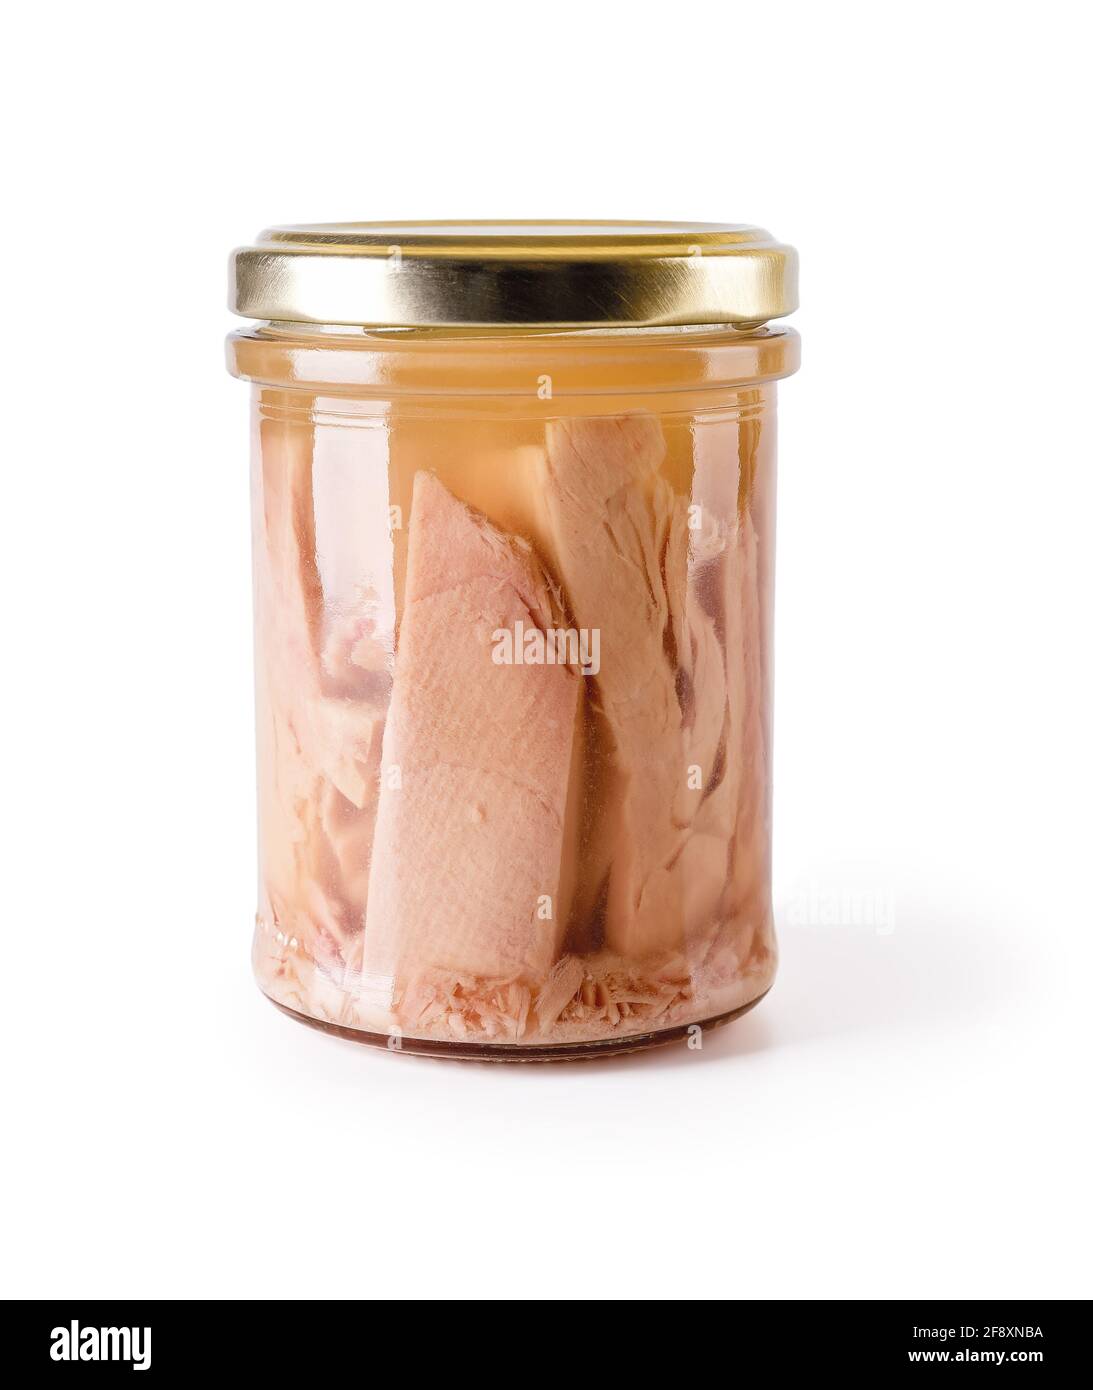 Pezzi di filetto di tonno in scatola in un vaso di vetro con coperchio di  metallo giallo isolato su sfondo bianco. Conserve di carne di tonno per  basso basso consumo di calorie